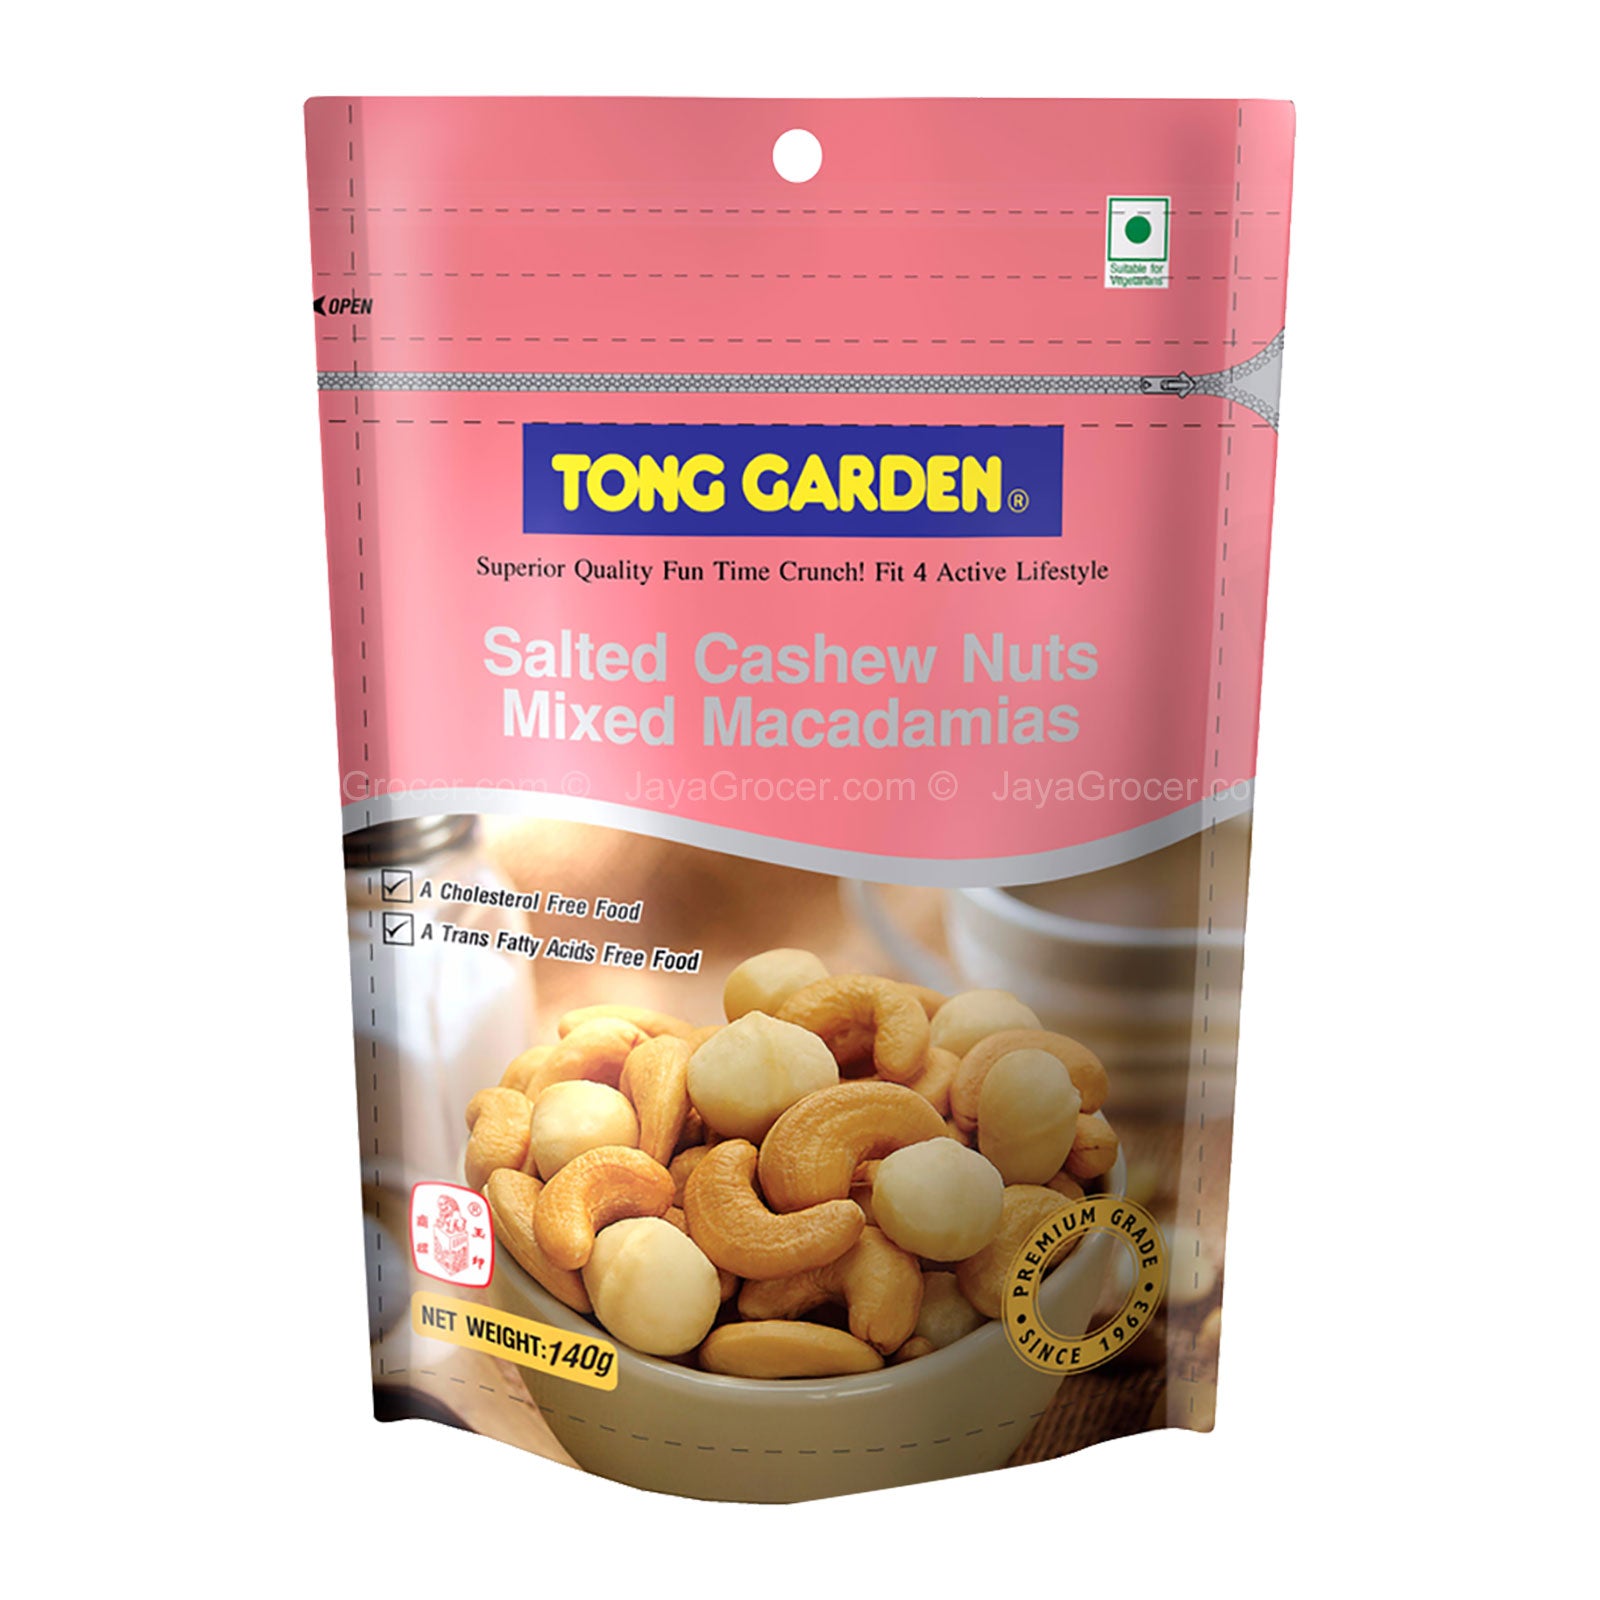 Tong Garden Honey Roasted Cashew & Macadamia